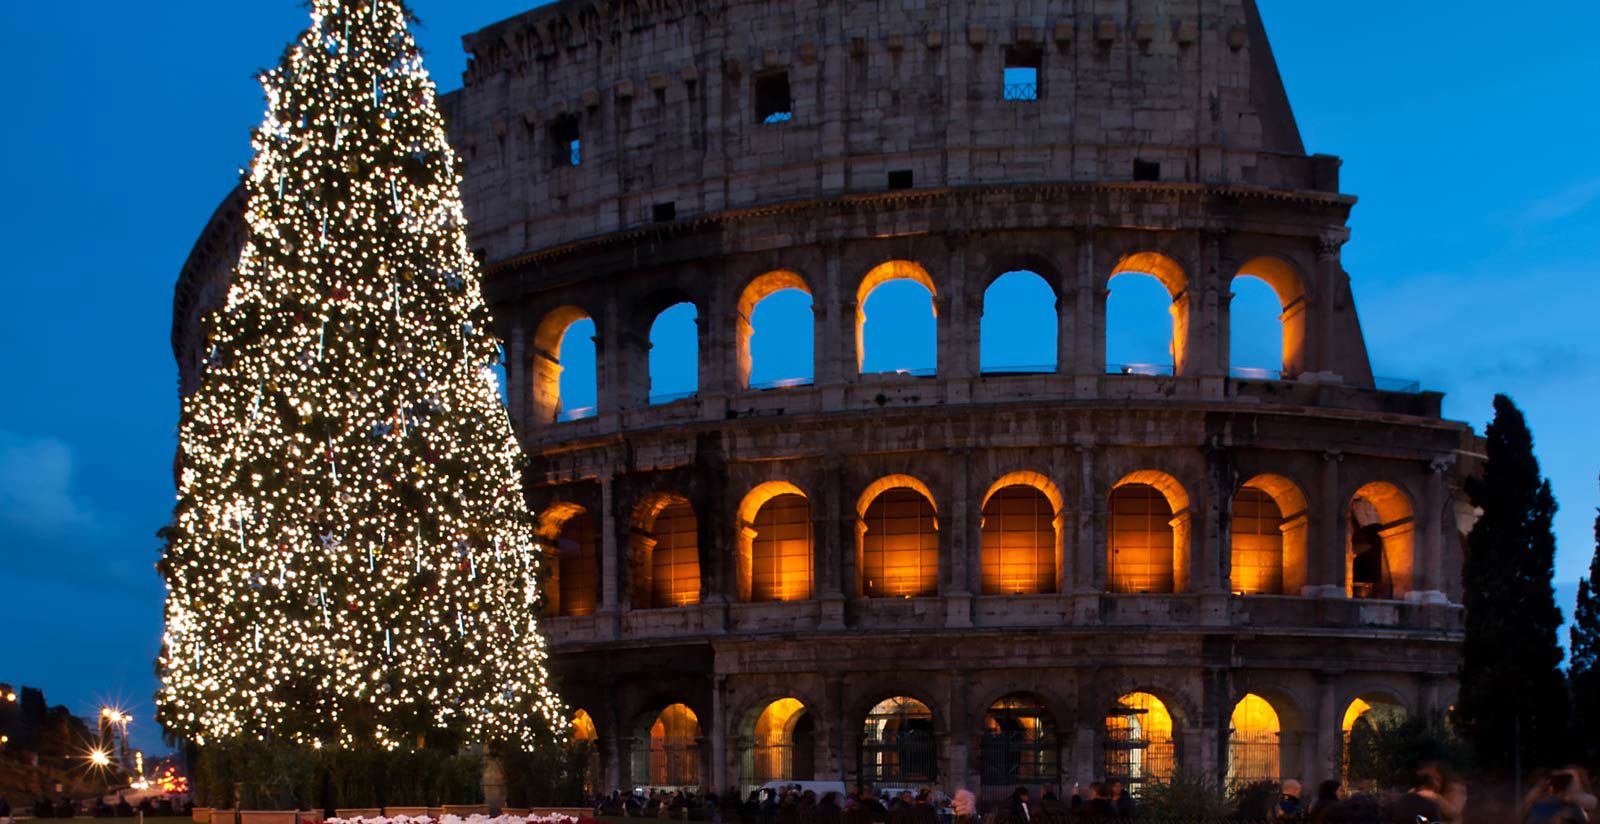 FH55 Hotels - Hotel a Roma per Capodanno: offerte in 4 stelle 1